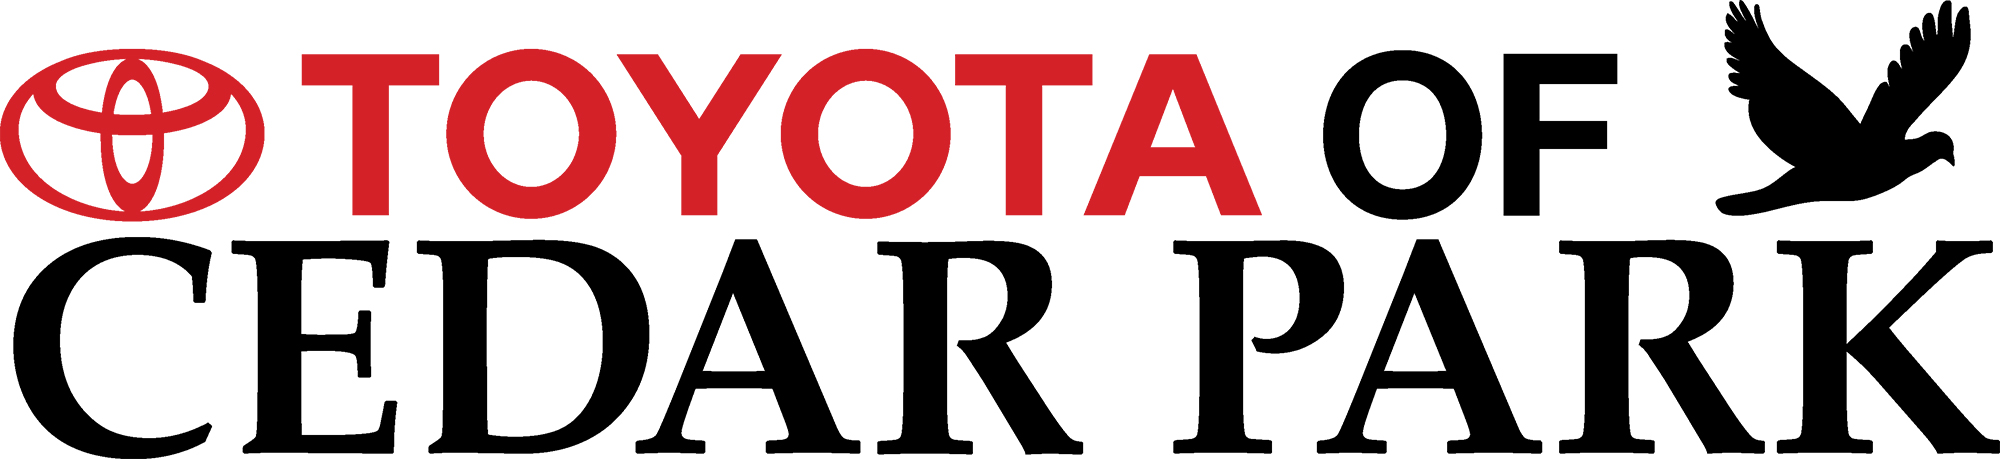 Toyota of Cedar Park Logo